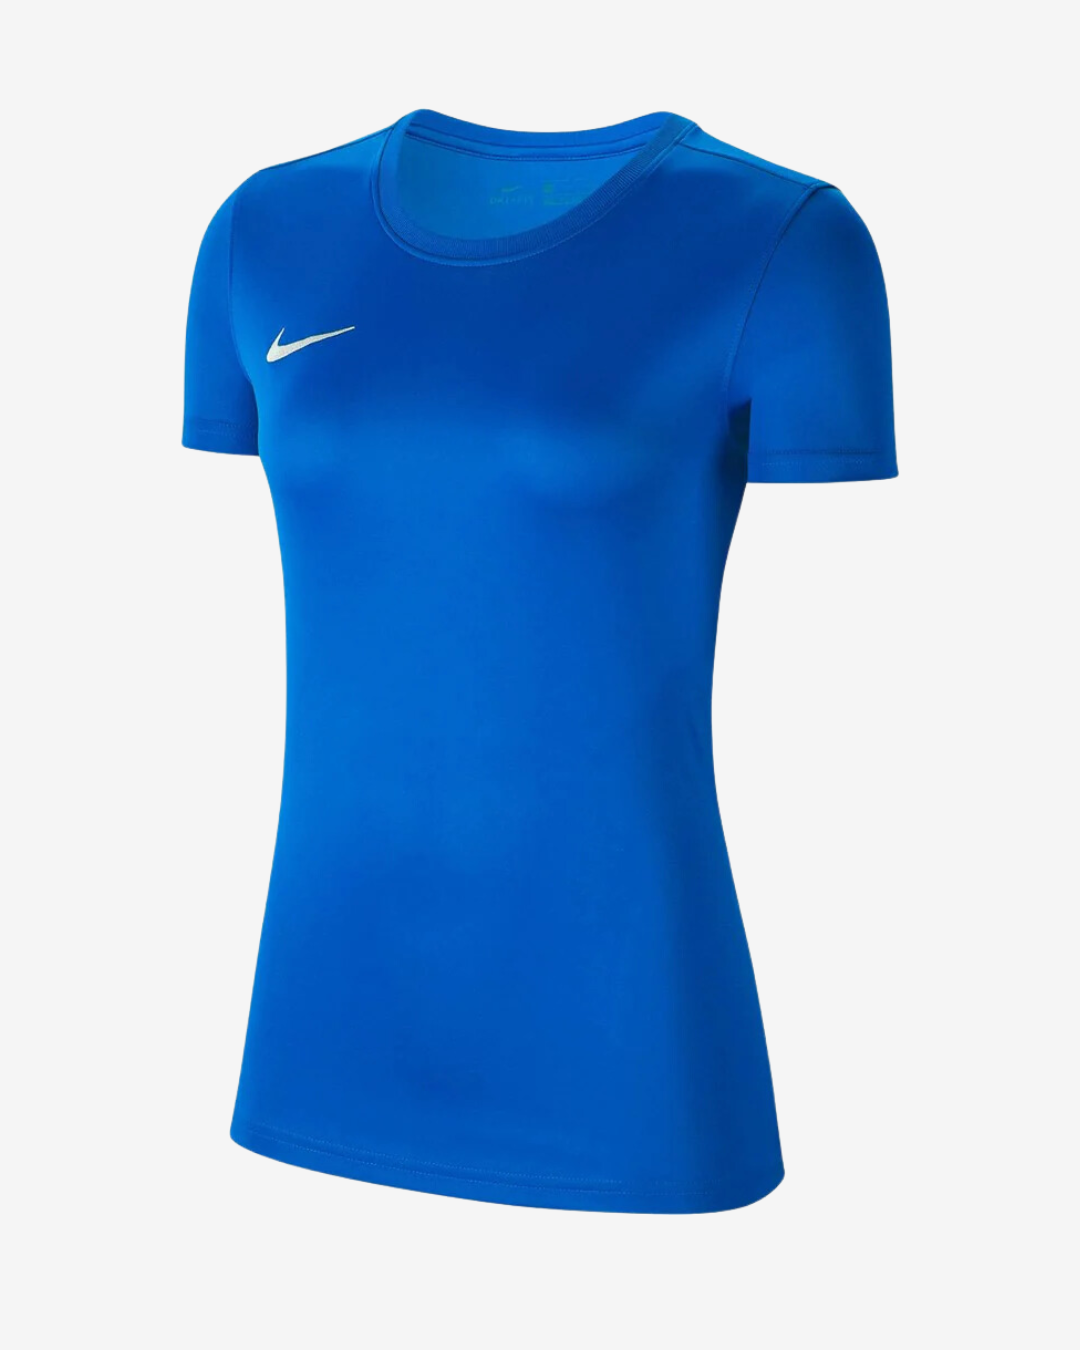 Billede af Nike Dri-fit park 7 dame t-shirt - Blå - Str. XL - Modish.dk